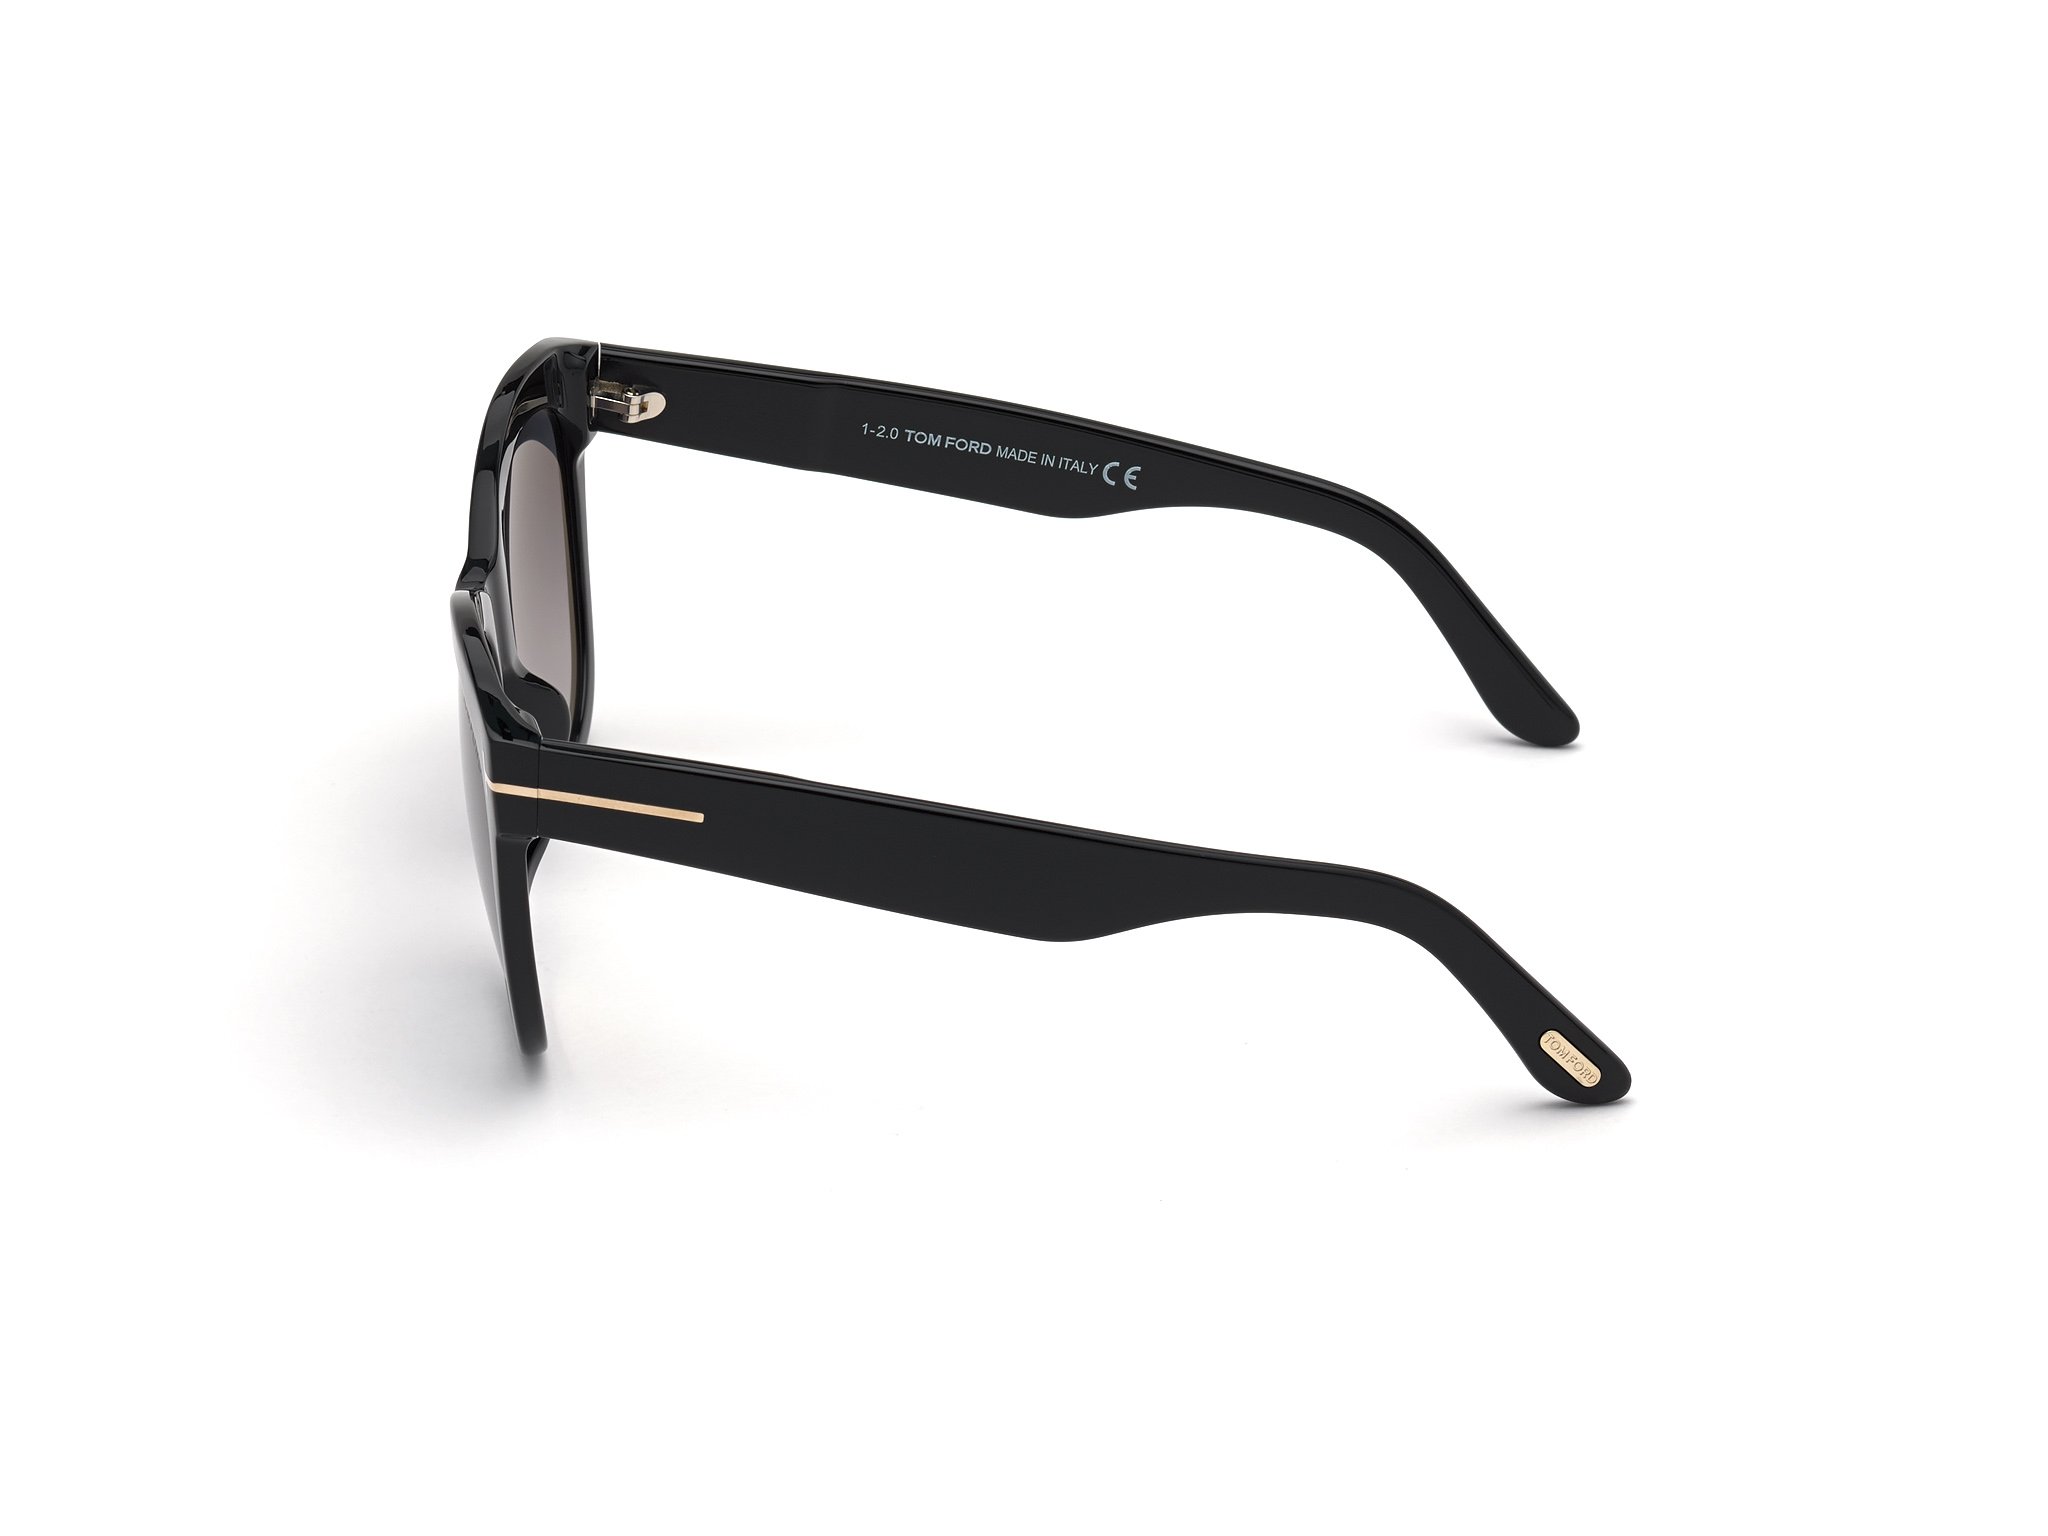 Das Bild zeigt die Sonnenbrille Wallace FT0870 von der Marke Tom Ford in schwarz seitlich